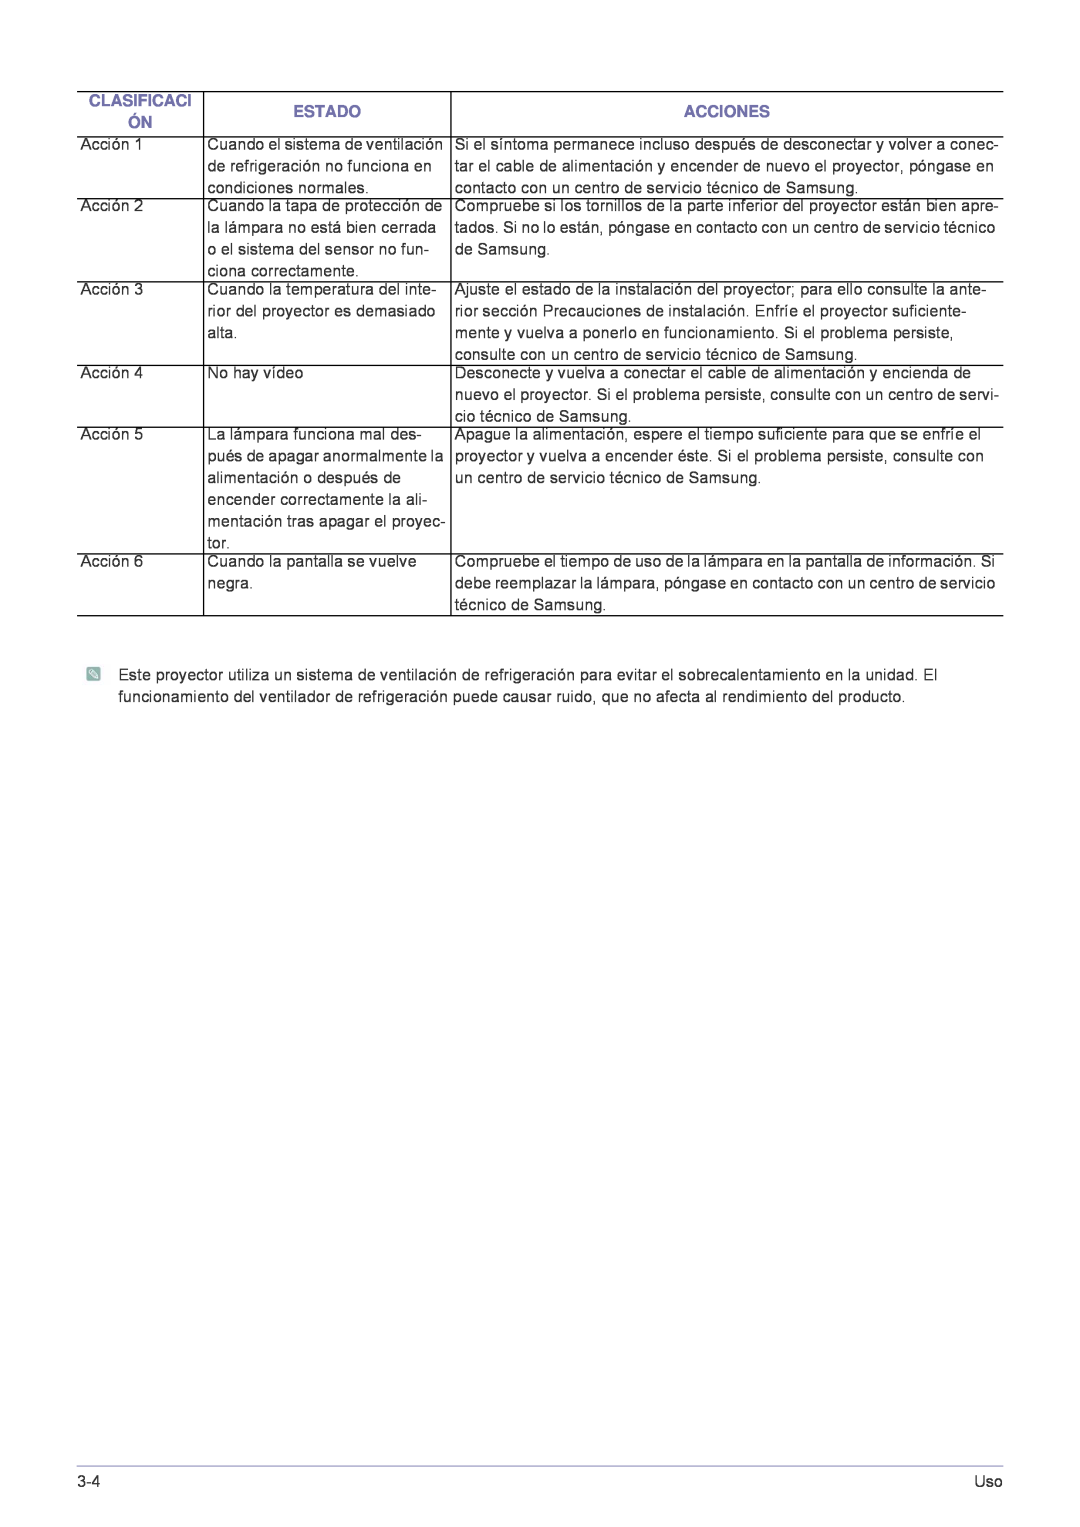 Samsung SP-A600B, SPA600BX/EN manual Clasificaci, Estado, Acciones 